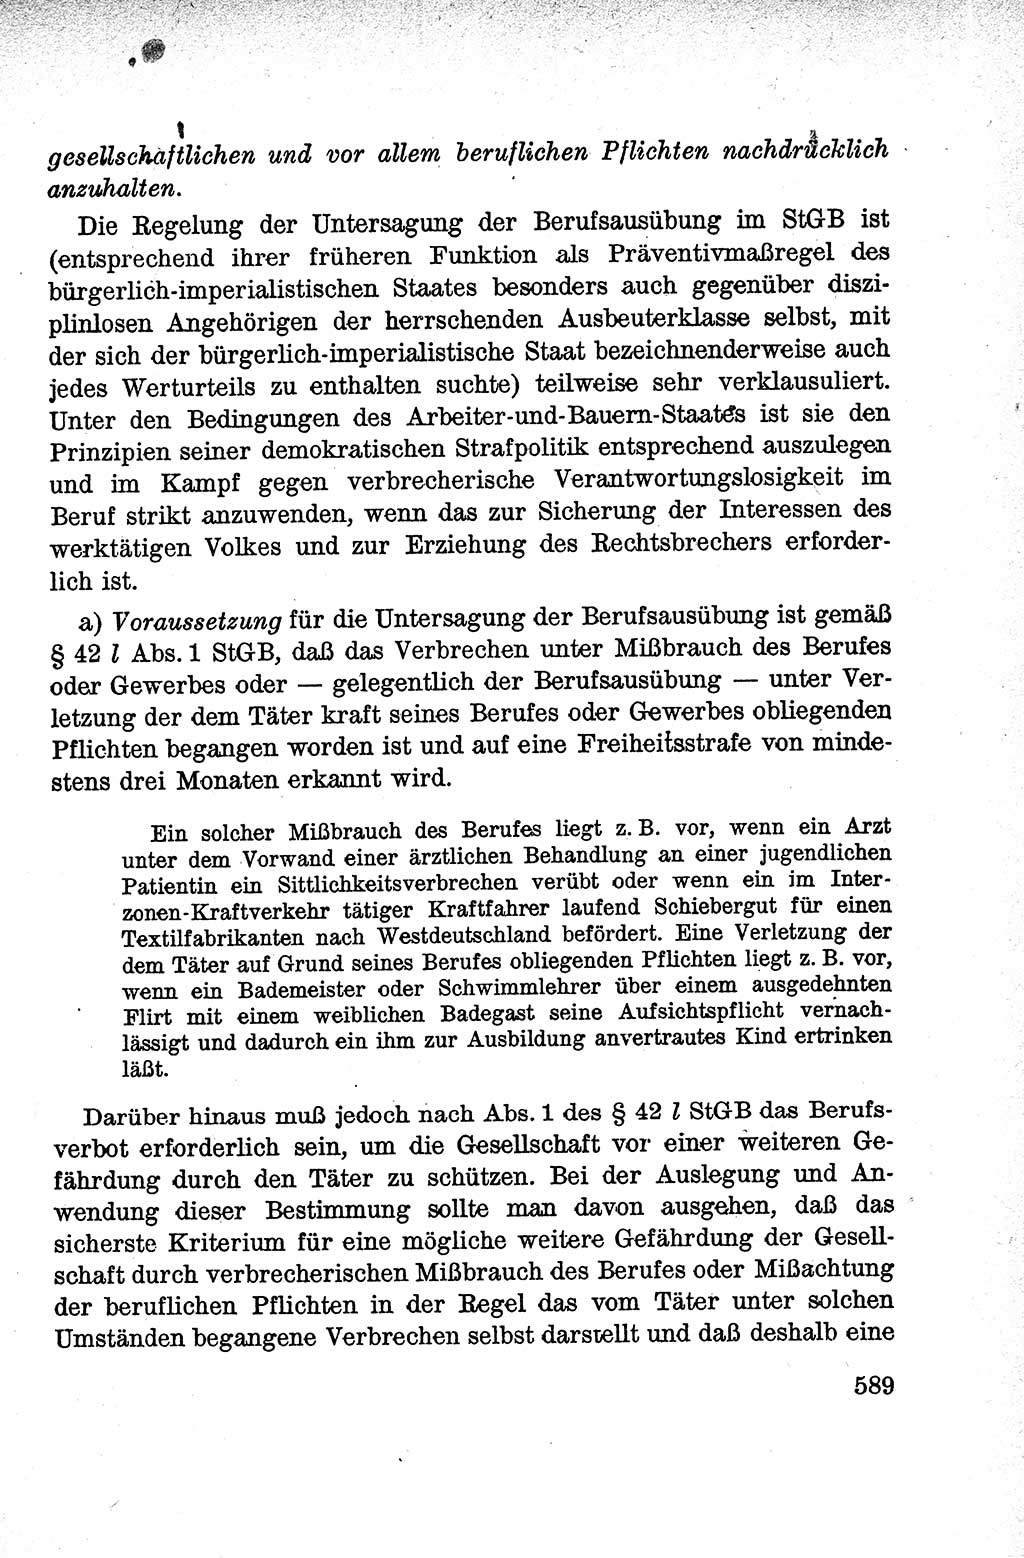 Lehrbuch des Strafrechts der Deutschen Demokratischen Republik (DDR), Allgemeiner Teil 1959, Seite 589 (Lb. Strafr. DDR AT 1959, S. 589)